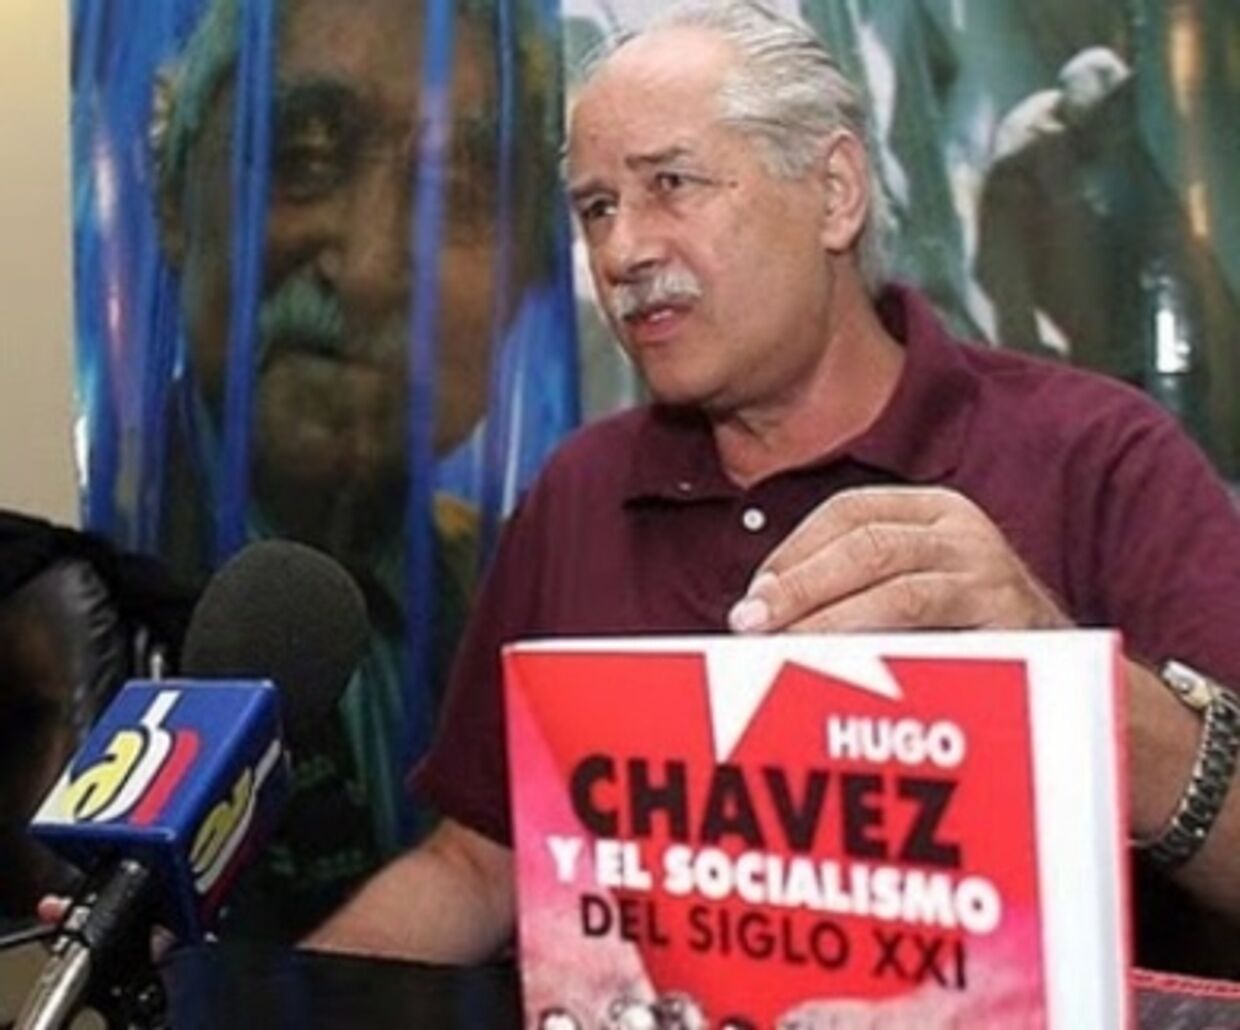 Идеолог социализма XXI века порывает с Чавесом